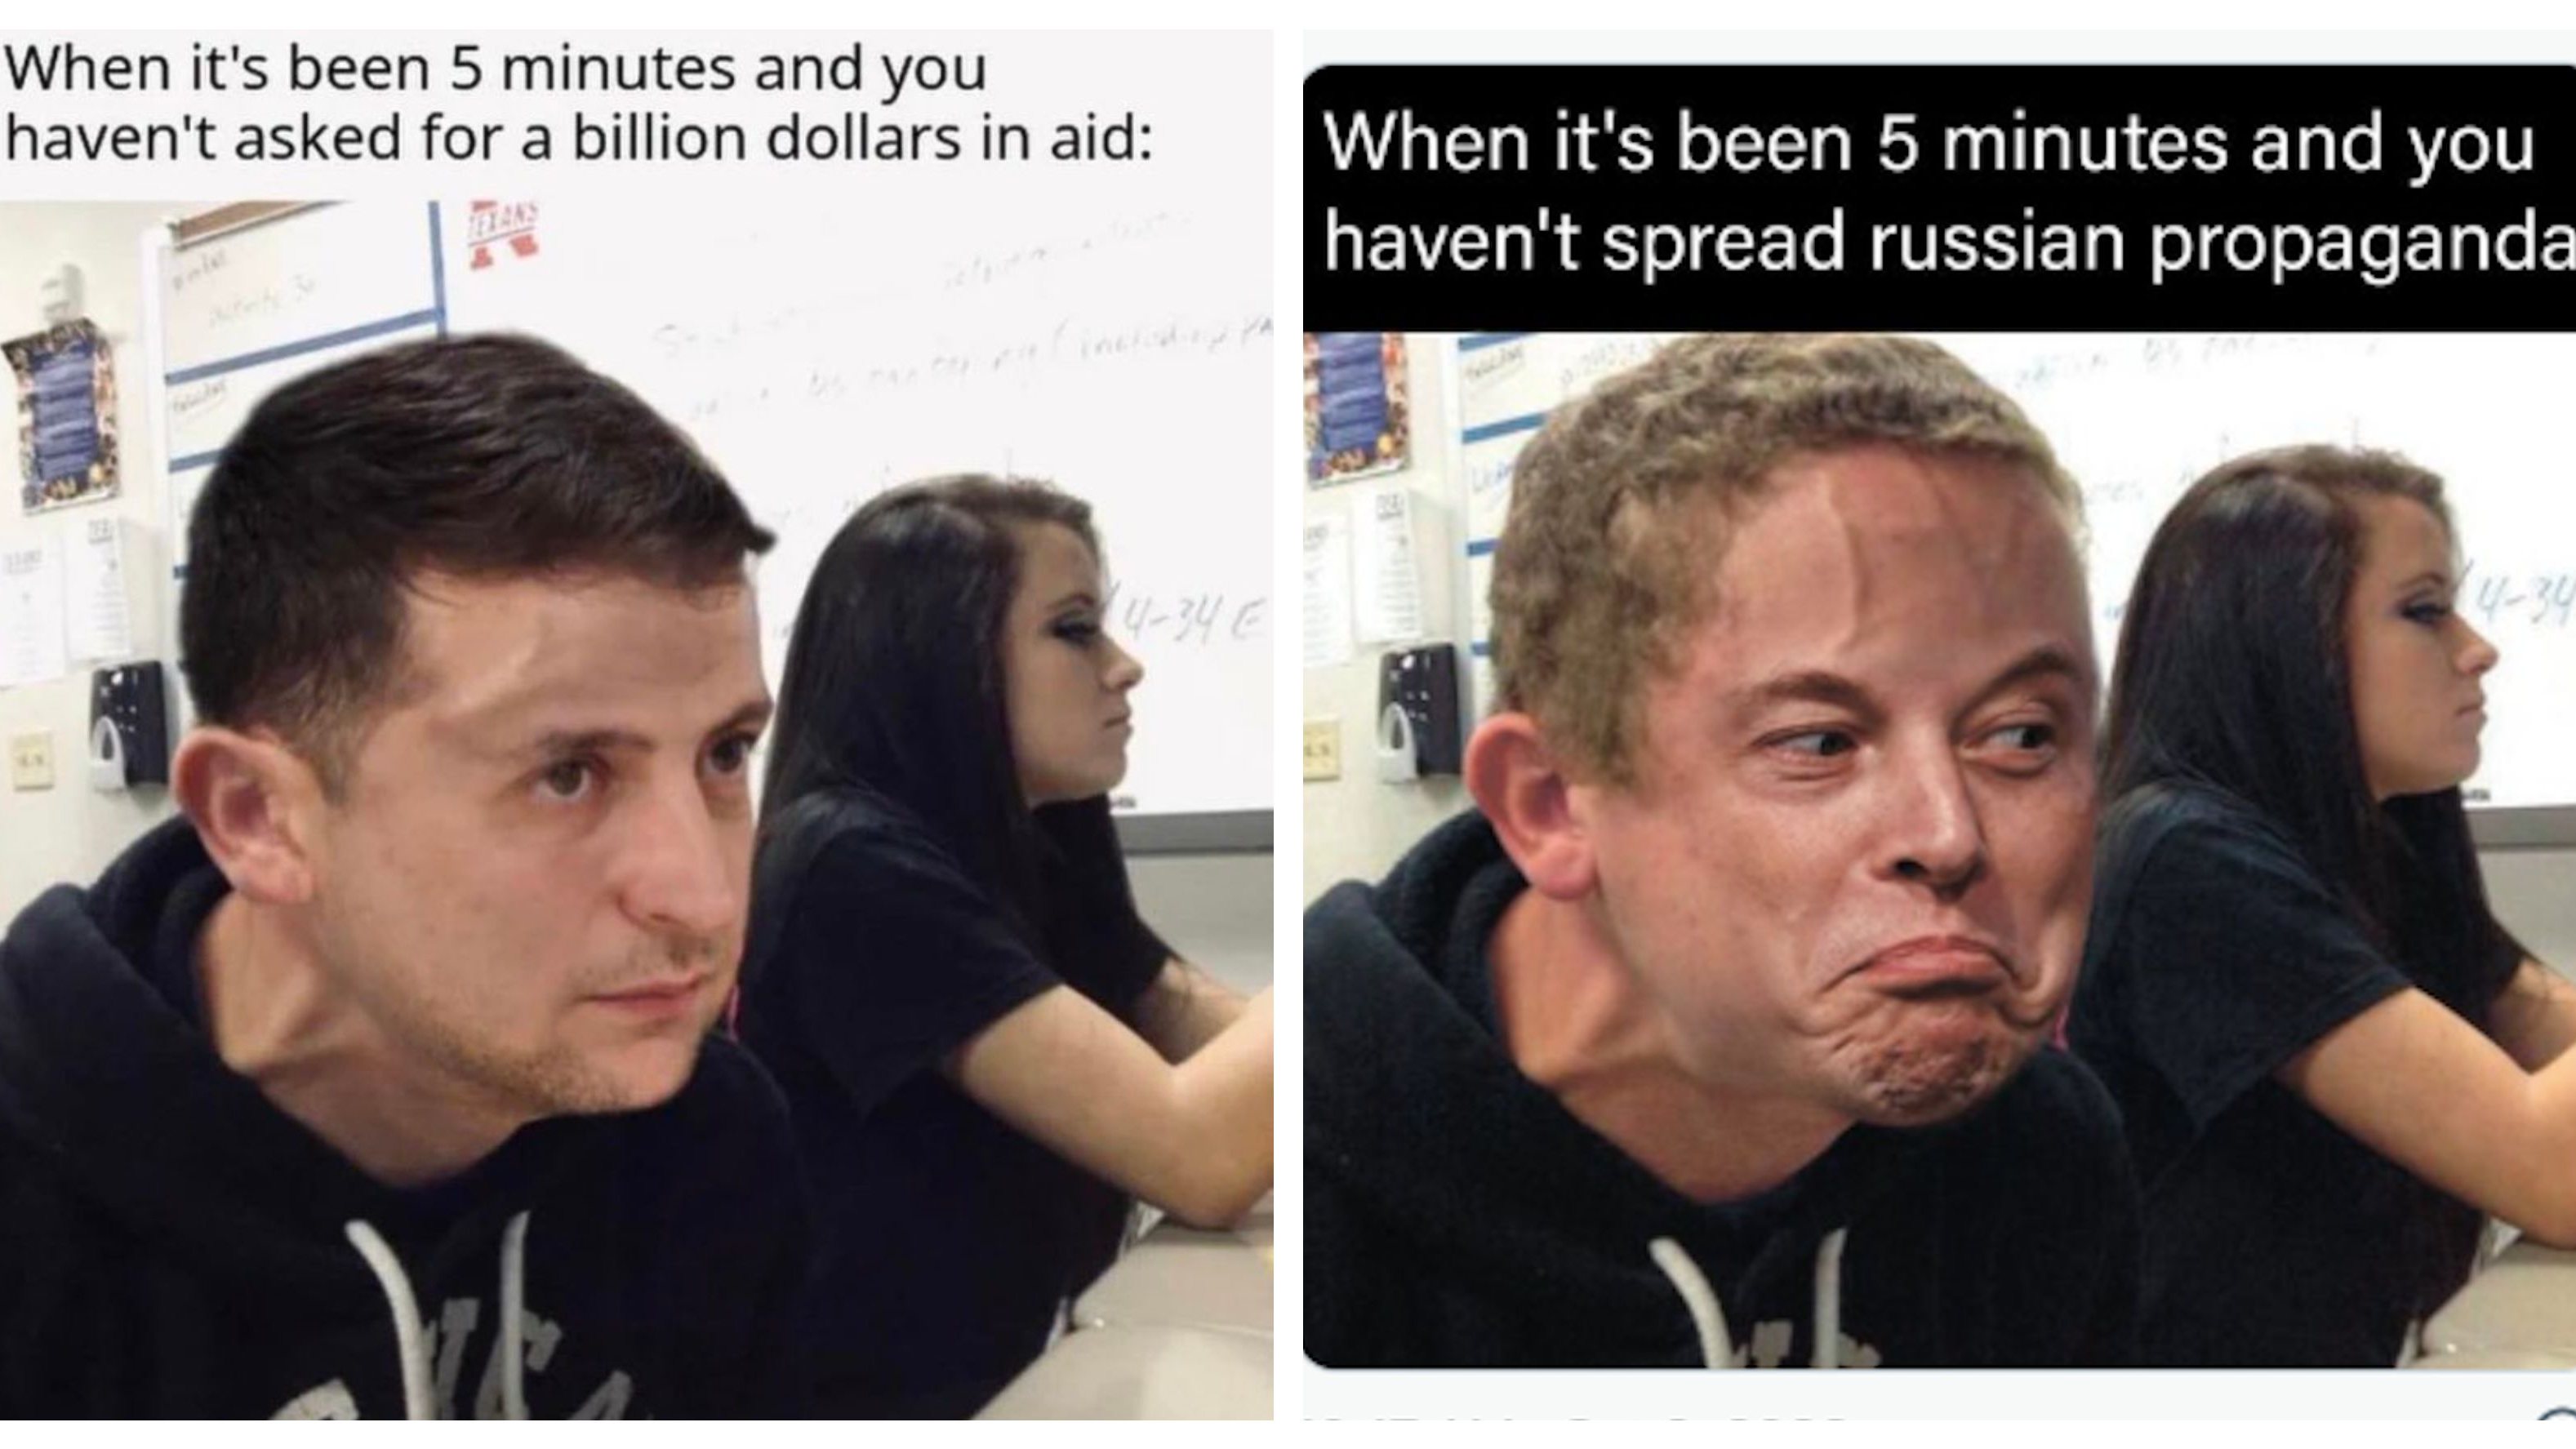 Elon Musk decidiu publicar um meme com a cara do Presidente da Ucrânia a ridicularizar com os pedidos de ajuda financeira que Zelensky tem feito desde o início da invasão russa. A resposta foi feita em termos semelhantes